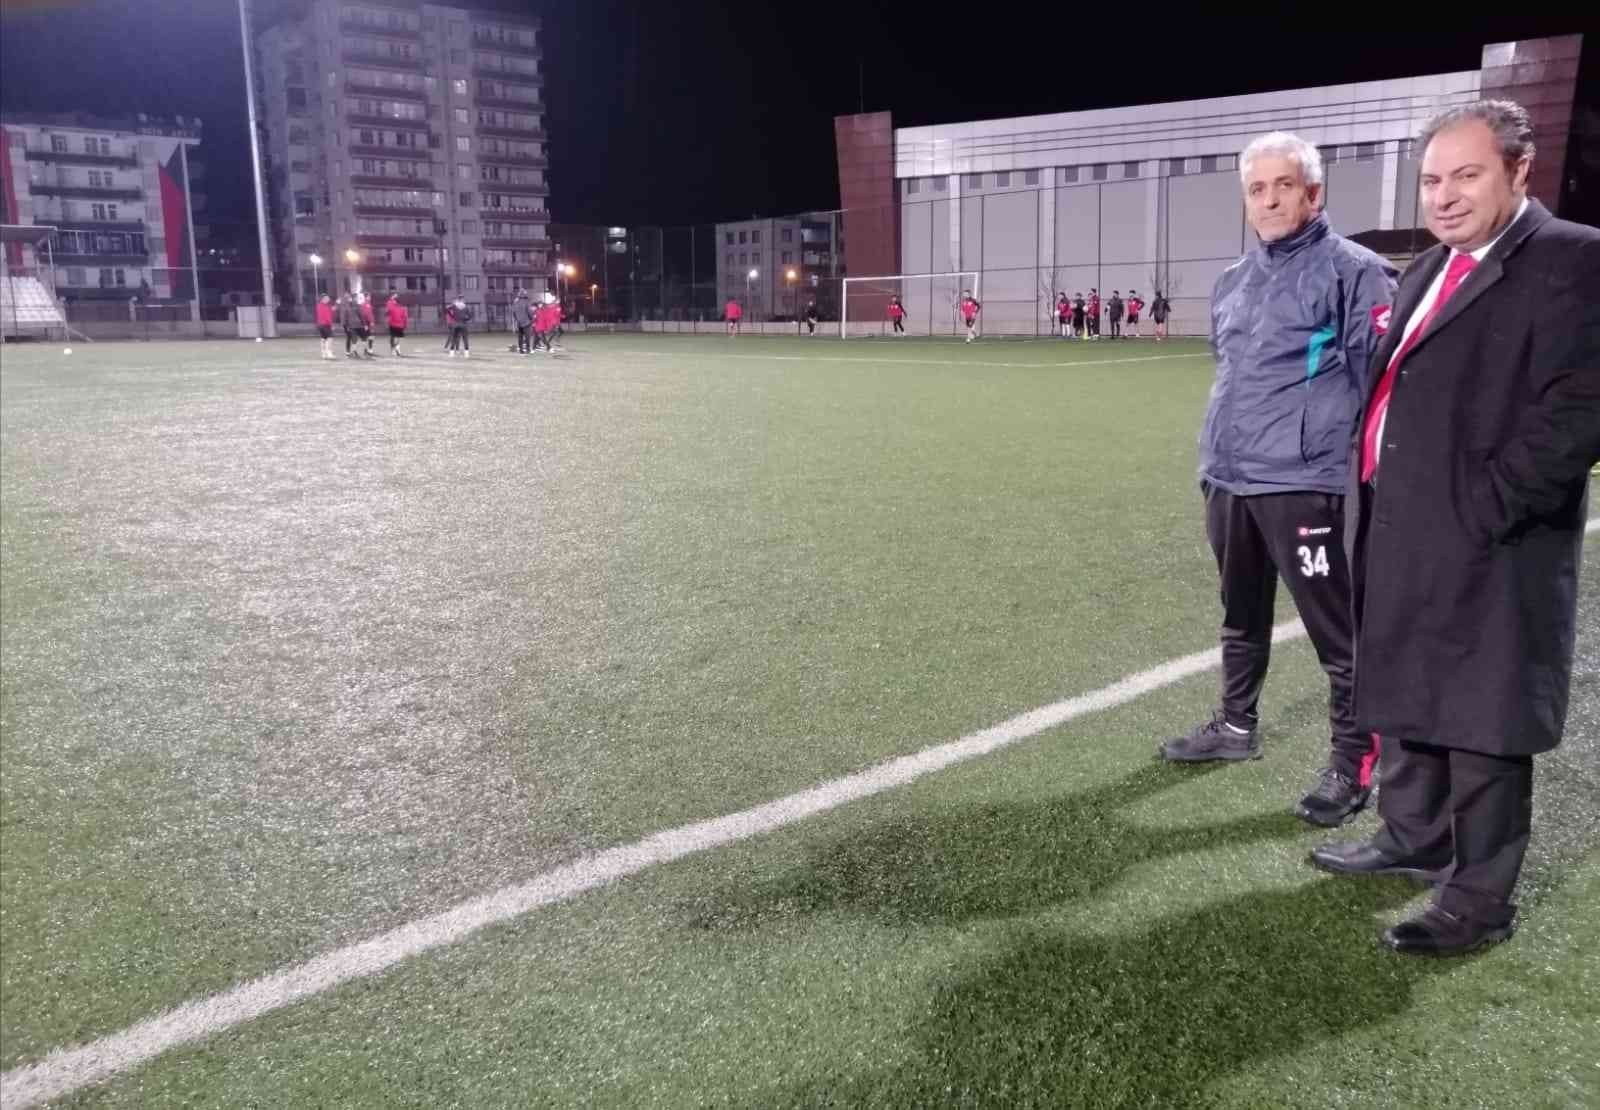 Diyarbakır Adaletspor futbol takımının şampiyonluk mücadelesi #diyarbakir